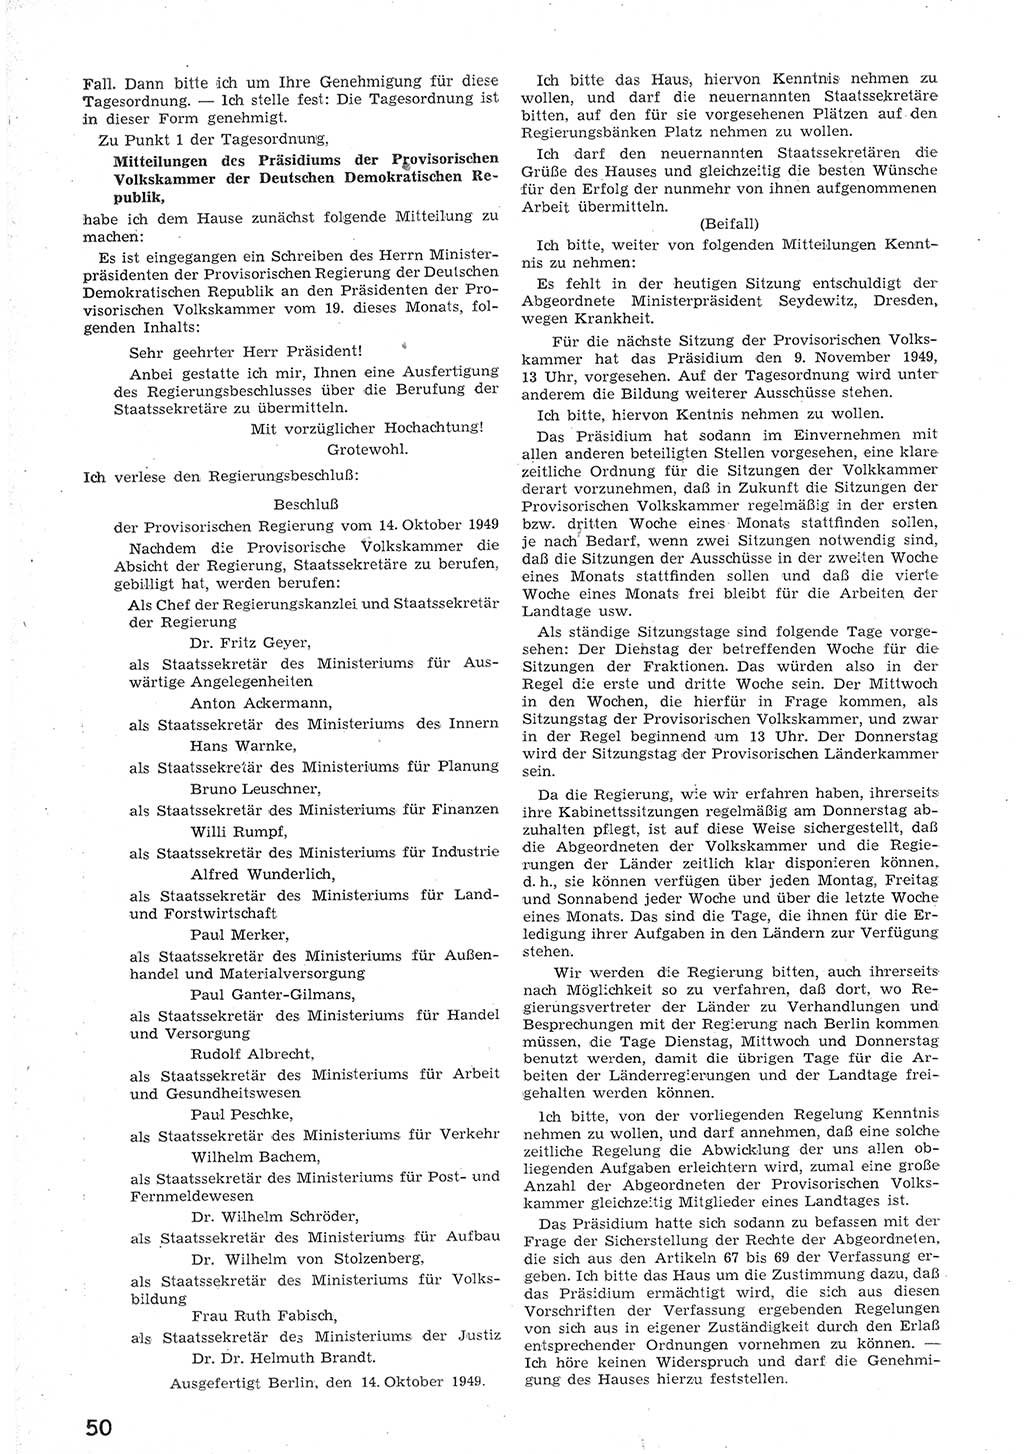 Provisorische Volkskammer (VK) der Deutschen Demokratischen Republik (DDR) 1949-1950, Dokument 62 (Prov. VK DDR 1949-1950, Dok. 62)